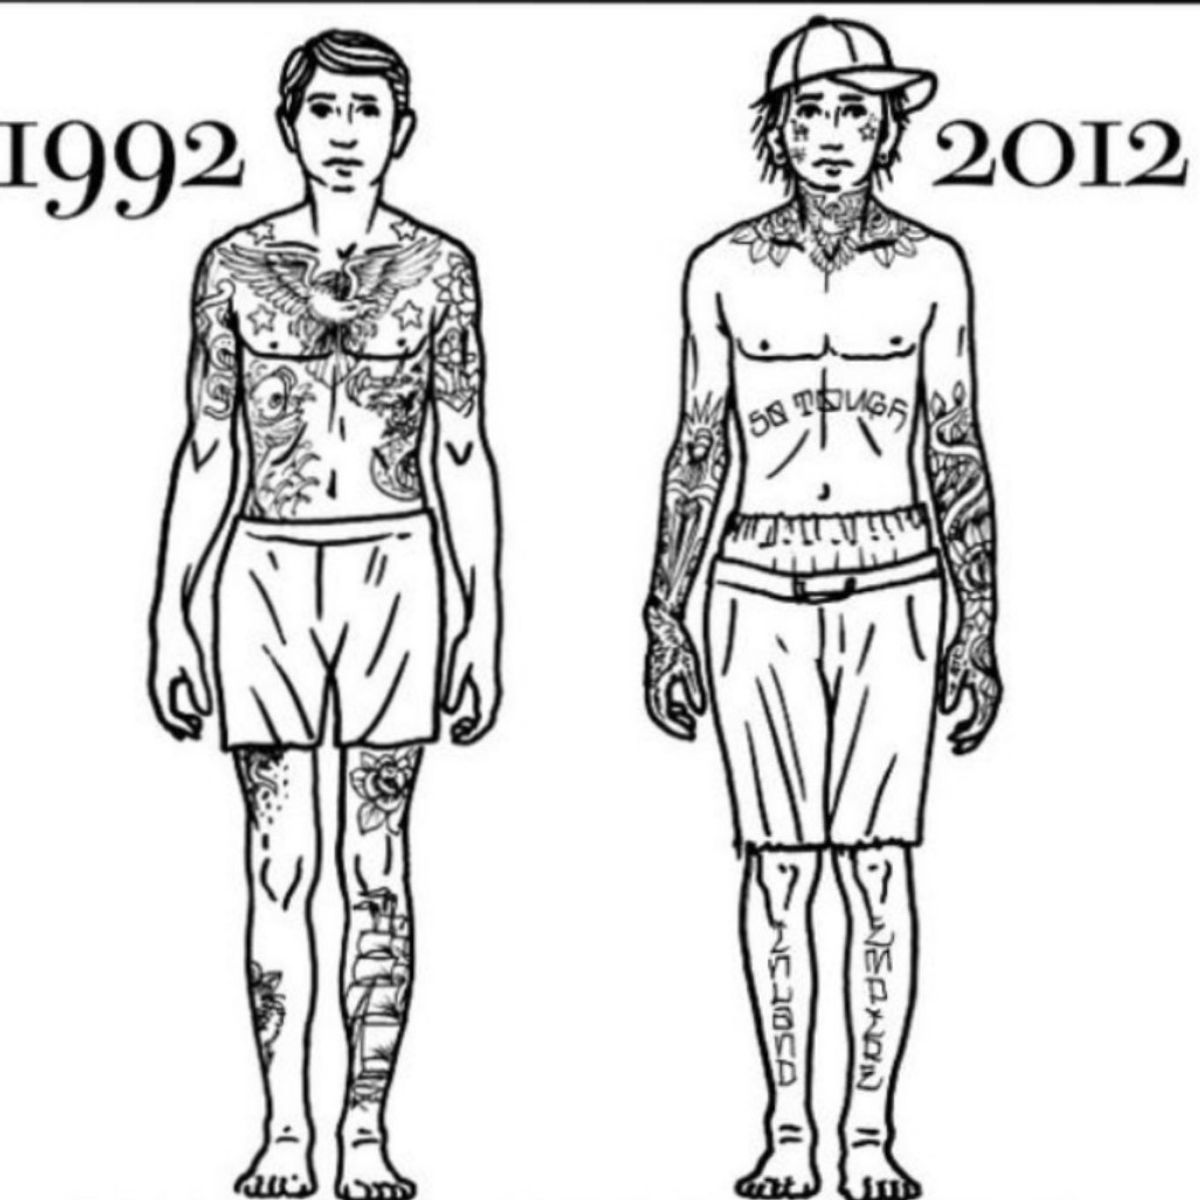 Эскизы татуировок для мужчин со смыслом